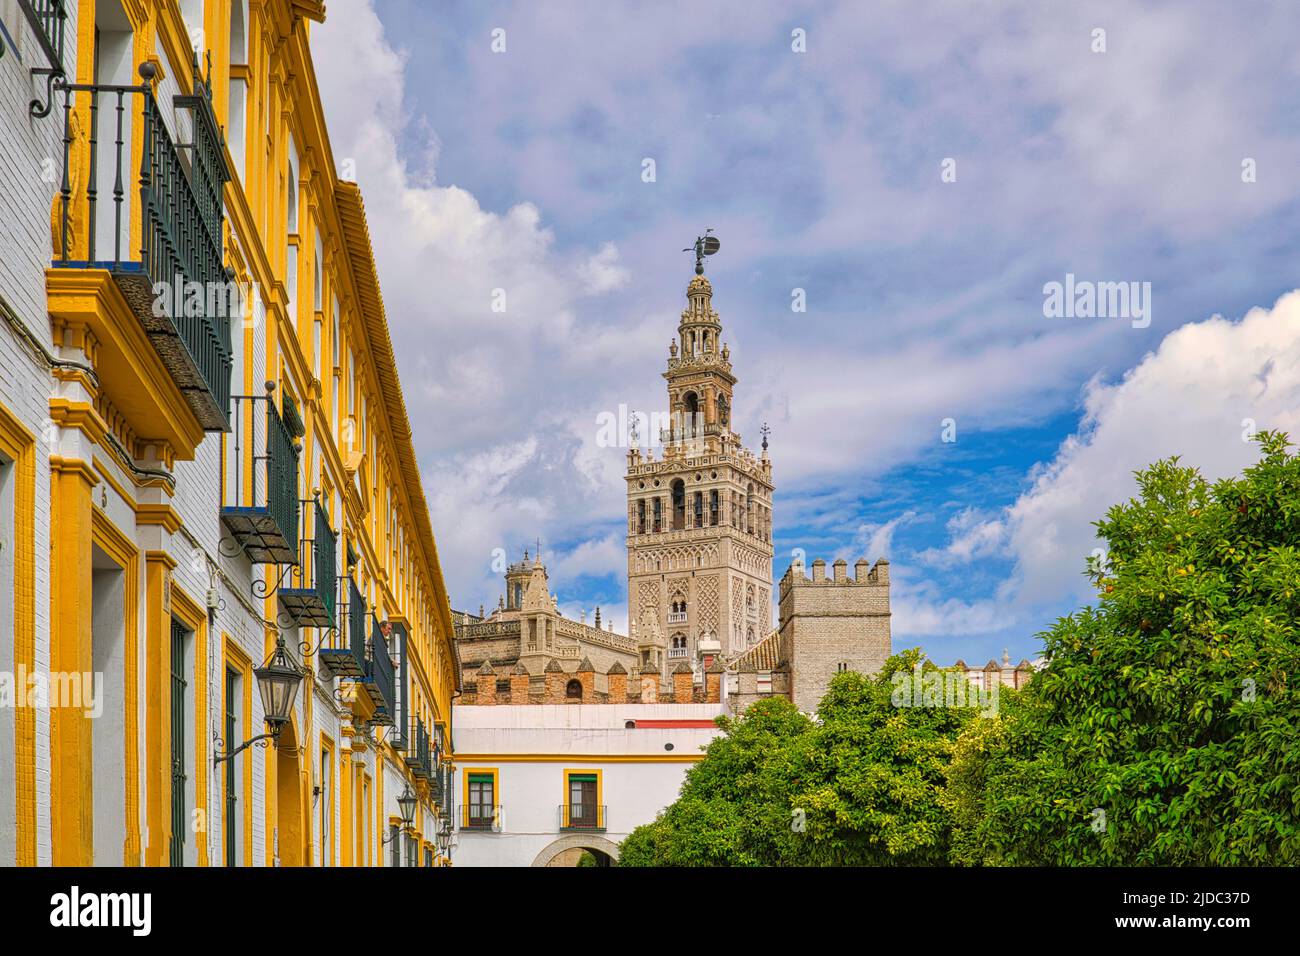 Le clocher de la Giralda vue depuis une jolie rue près de la cathédrale de Séville, en Espagne Banque D'Images